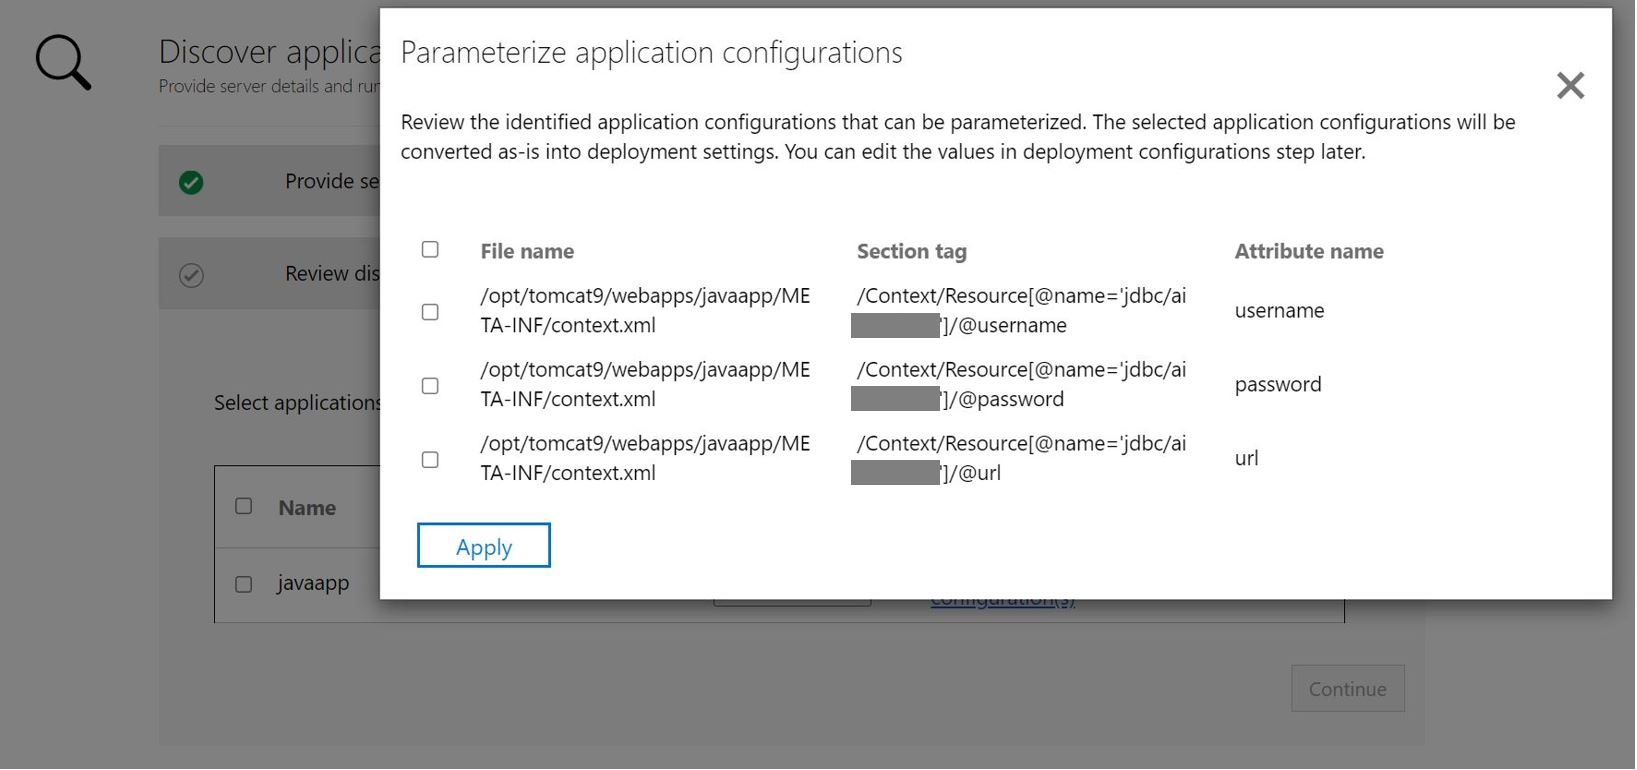 应用配置参数化 ASP.NET 应用程序的屏幕截图。